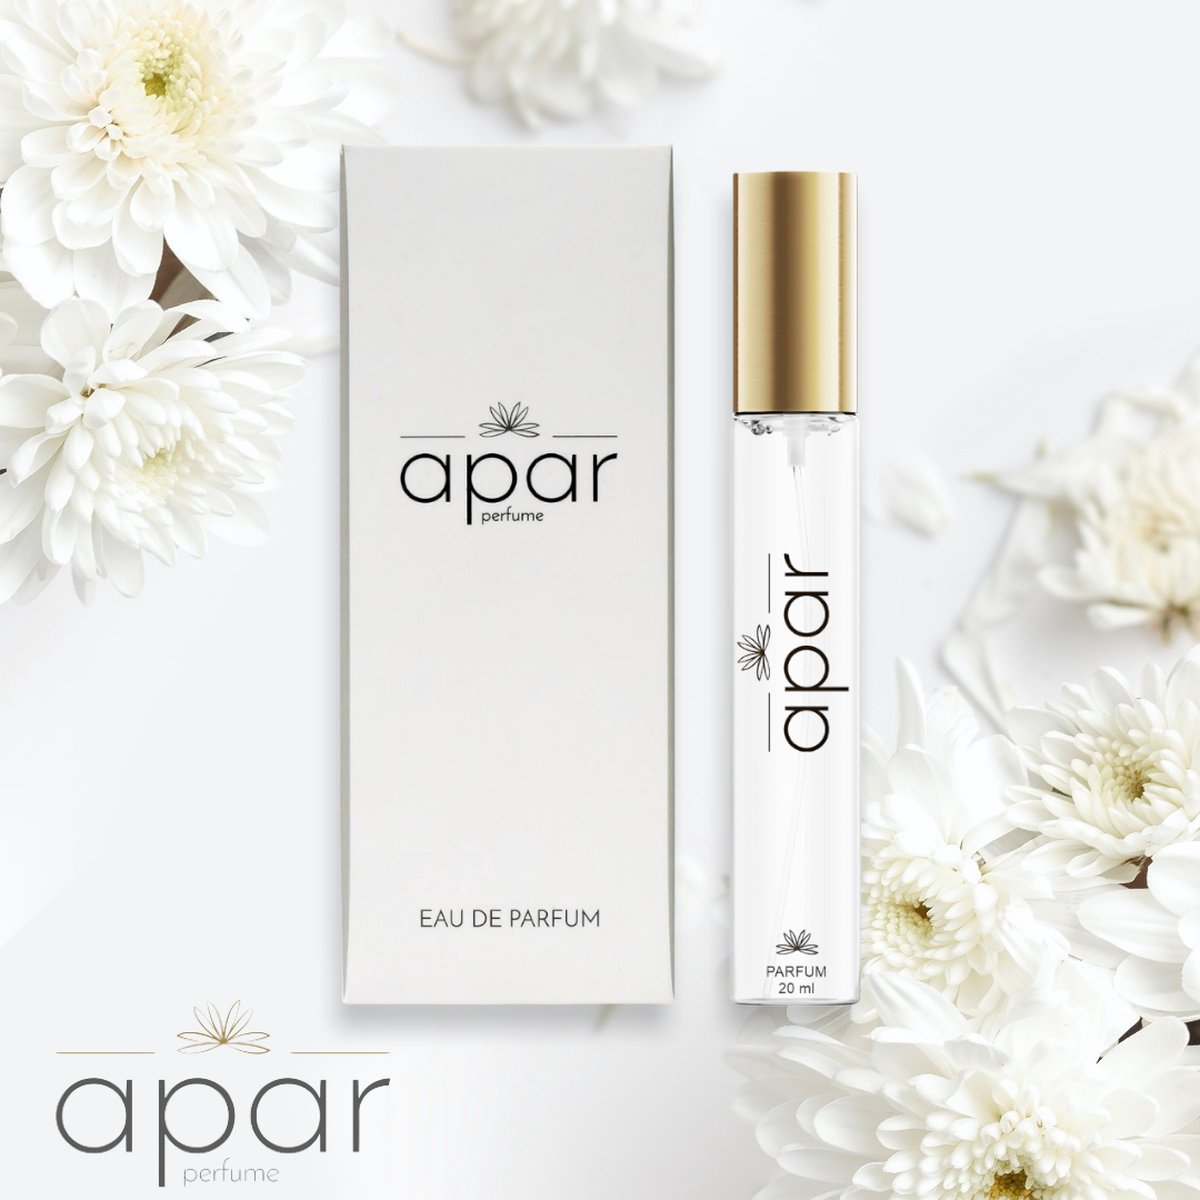 ❤Dure merk geuren voor een eerlijke prijs❤APAR Parfum EDP - 20ml - Nummer F105 Standard -